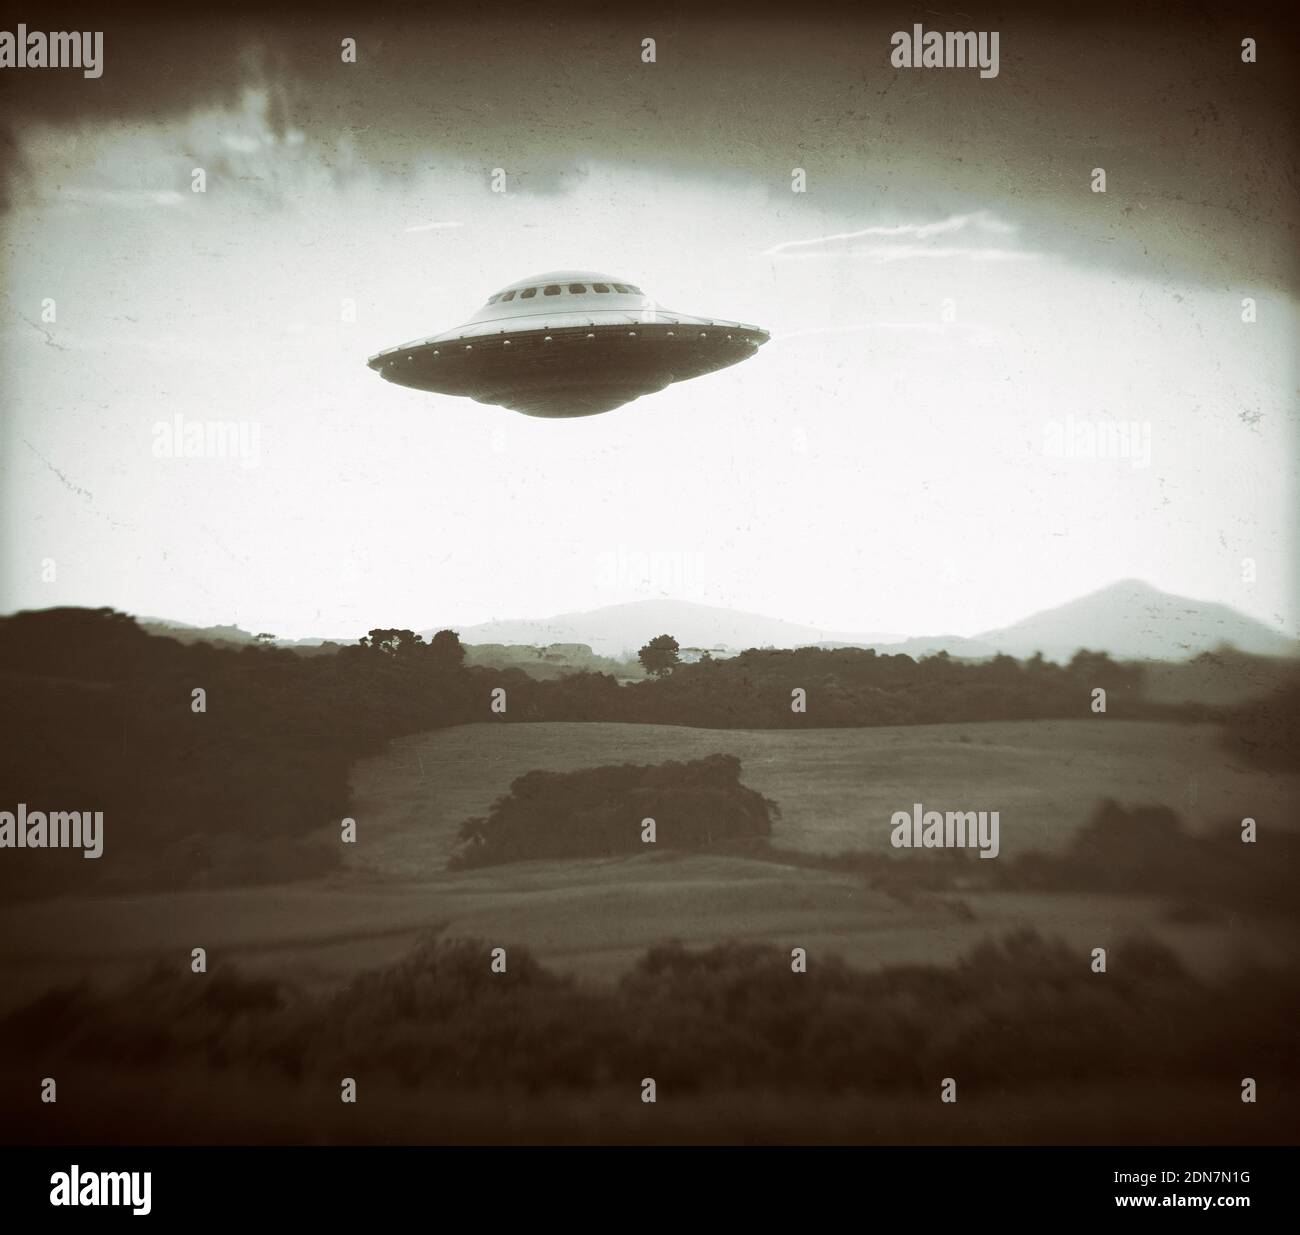 Nicht Identifiziertes Fliegendes Objekt. Konzept des alten Fotos. 3D-Illustration imitiert alte Fotografie von UFO. Stockfoto